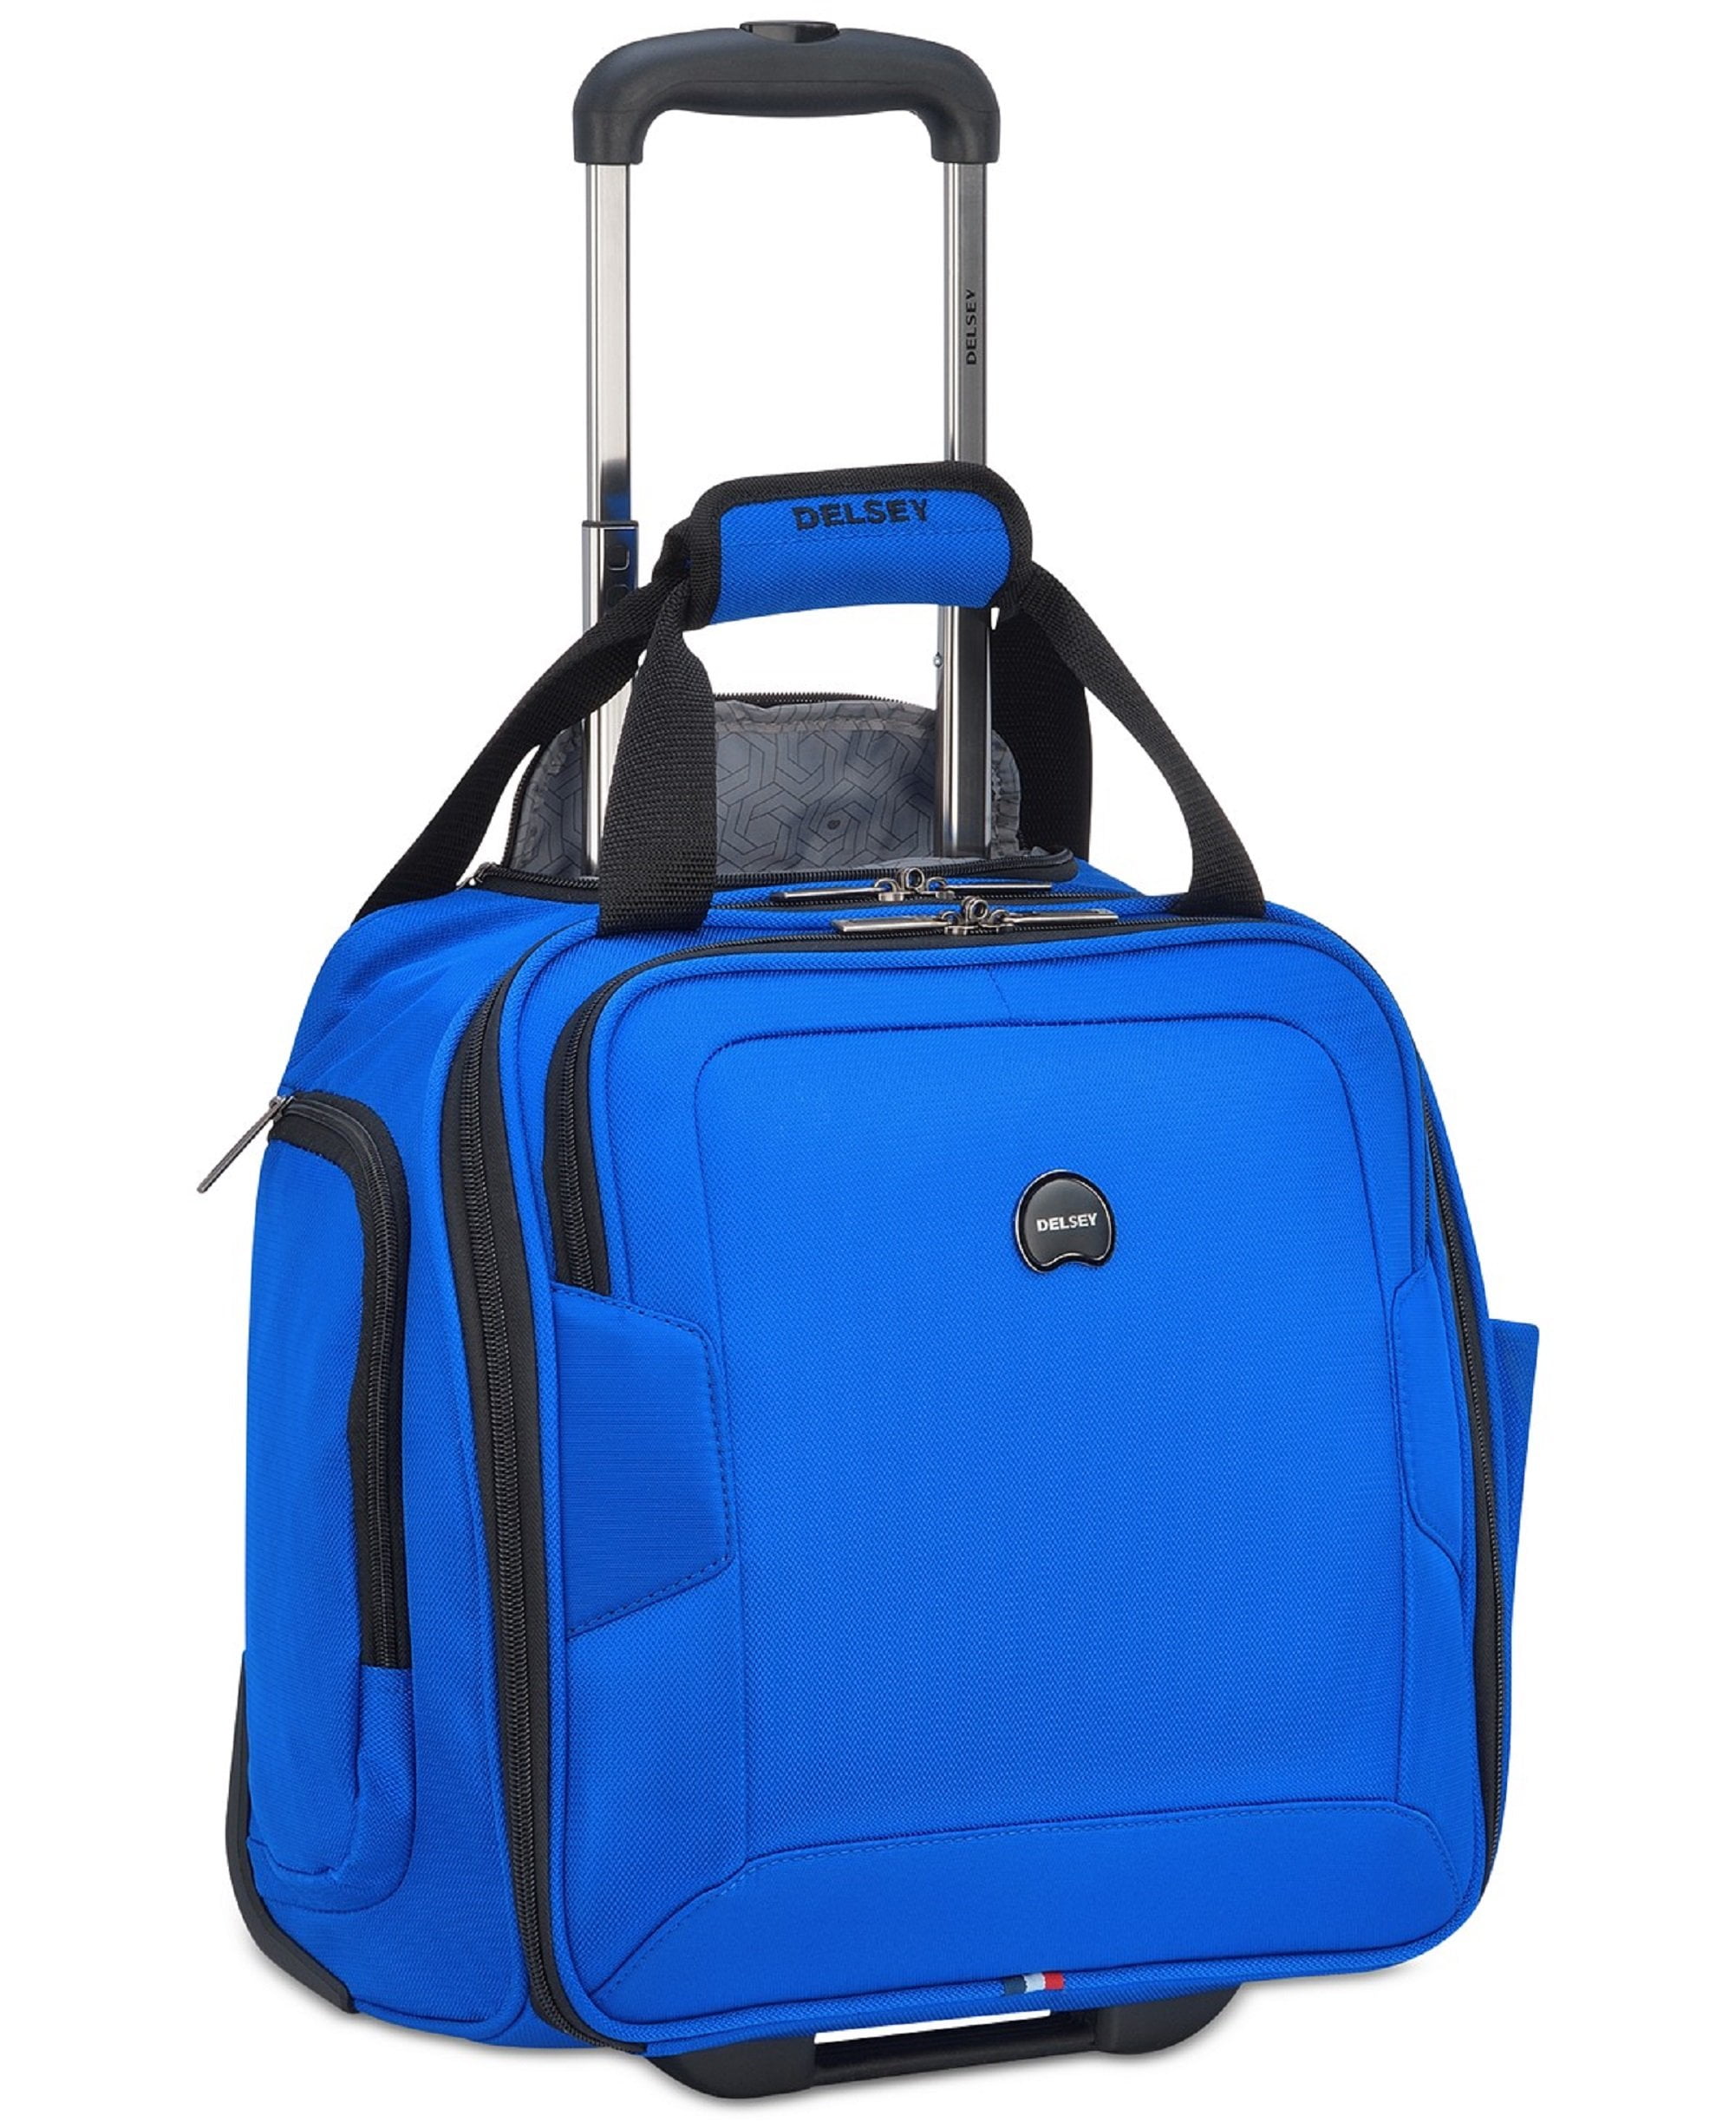 travel bag set blue